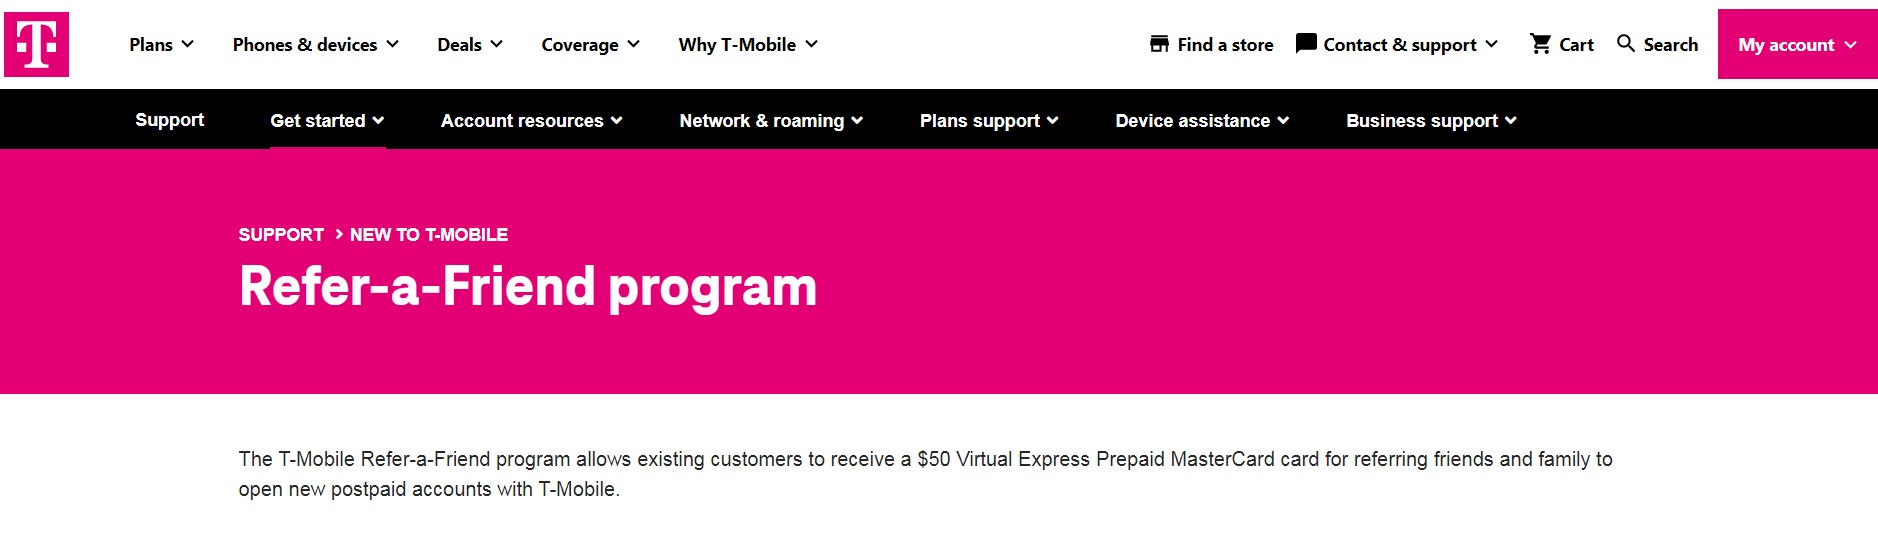 T-Mobile referral program